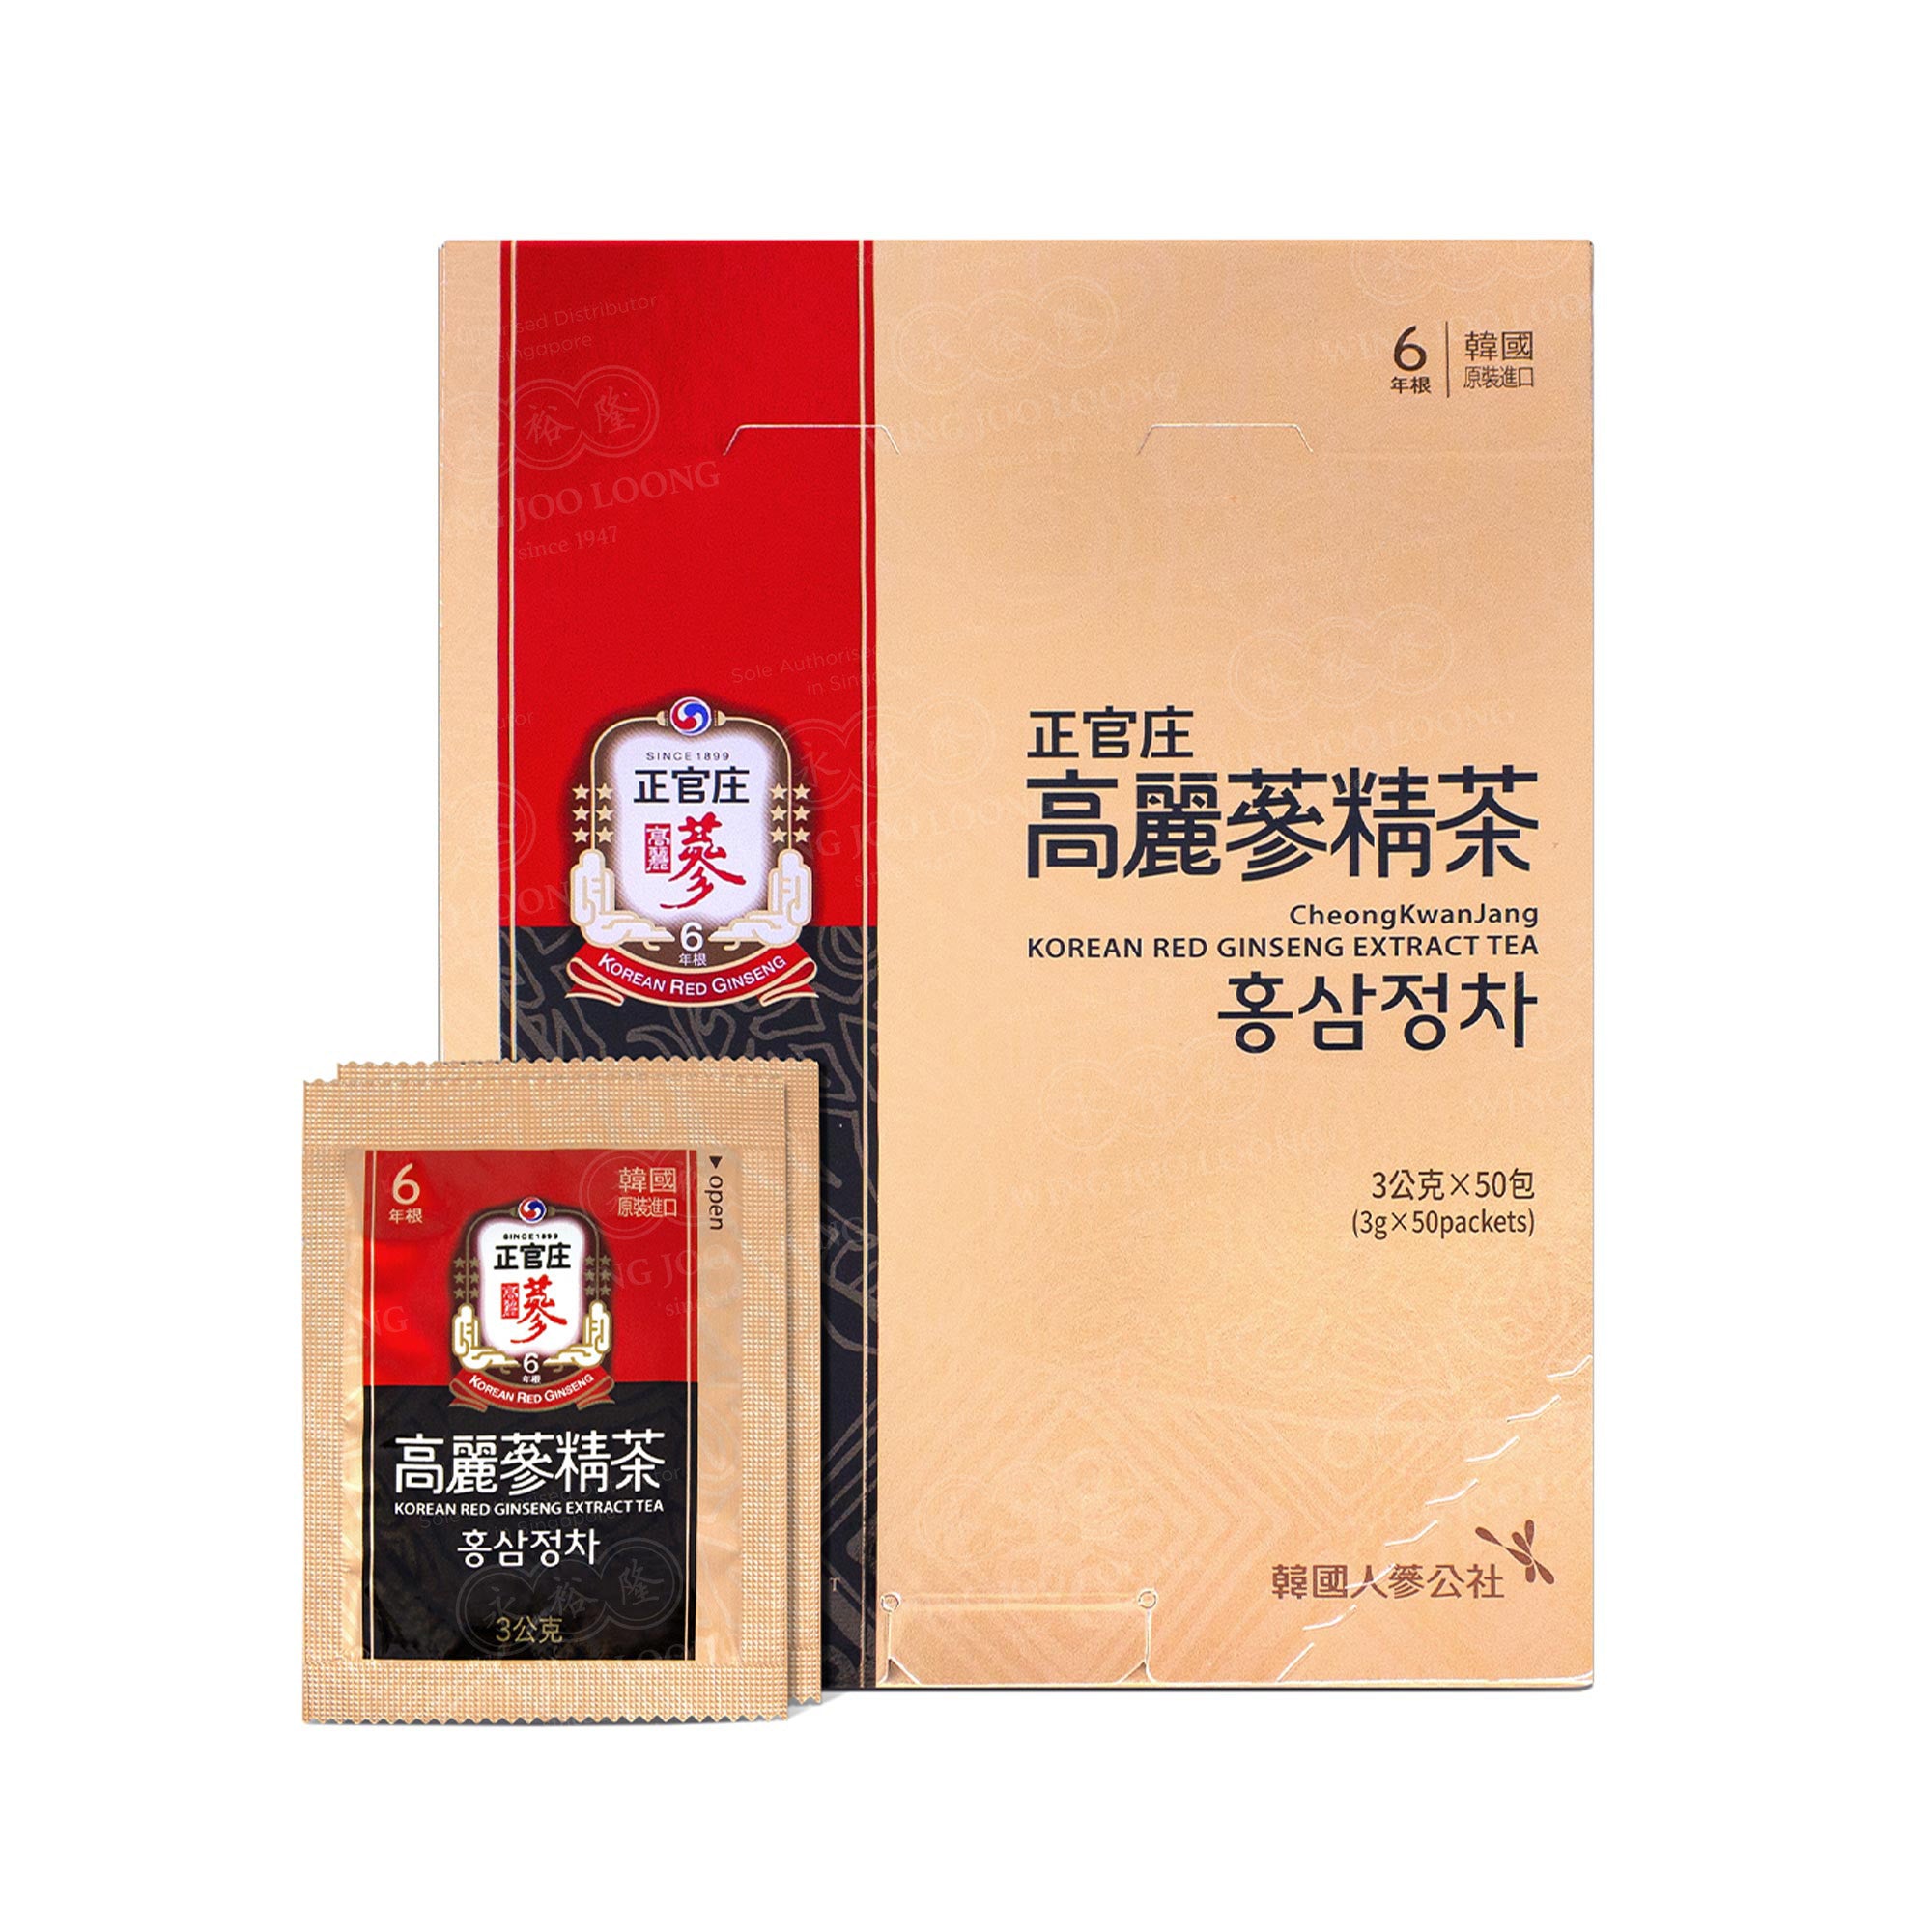 Cheong Kwan Jang Korean Red Ginseng Extract Tea 高丽参精茶